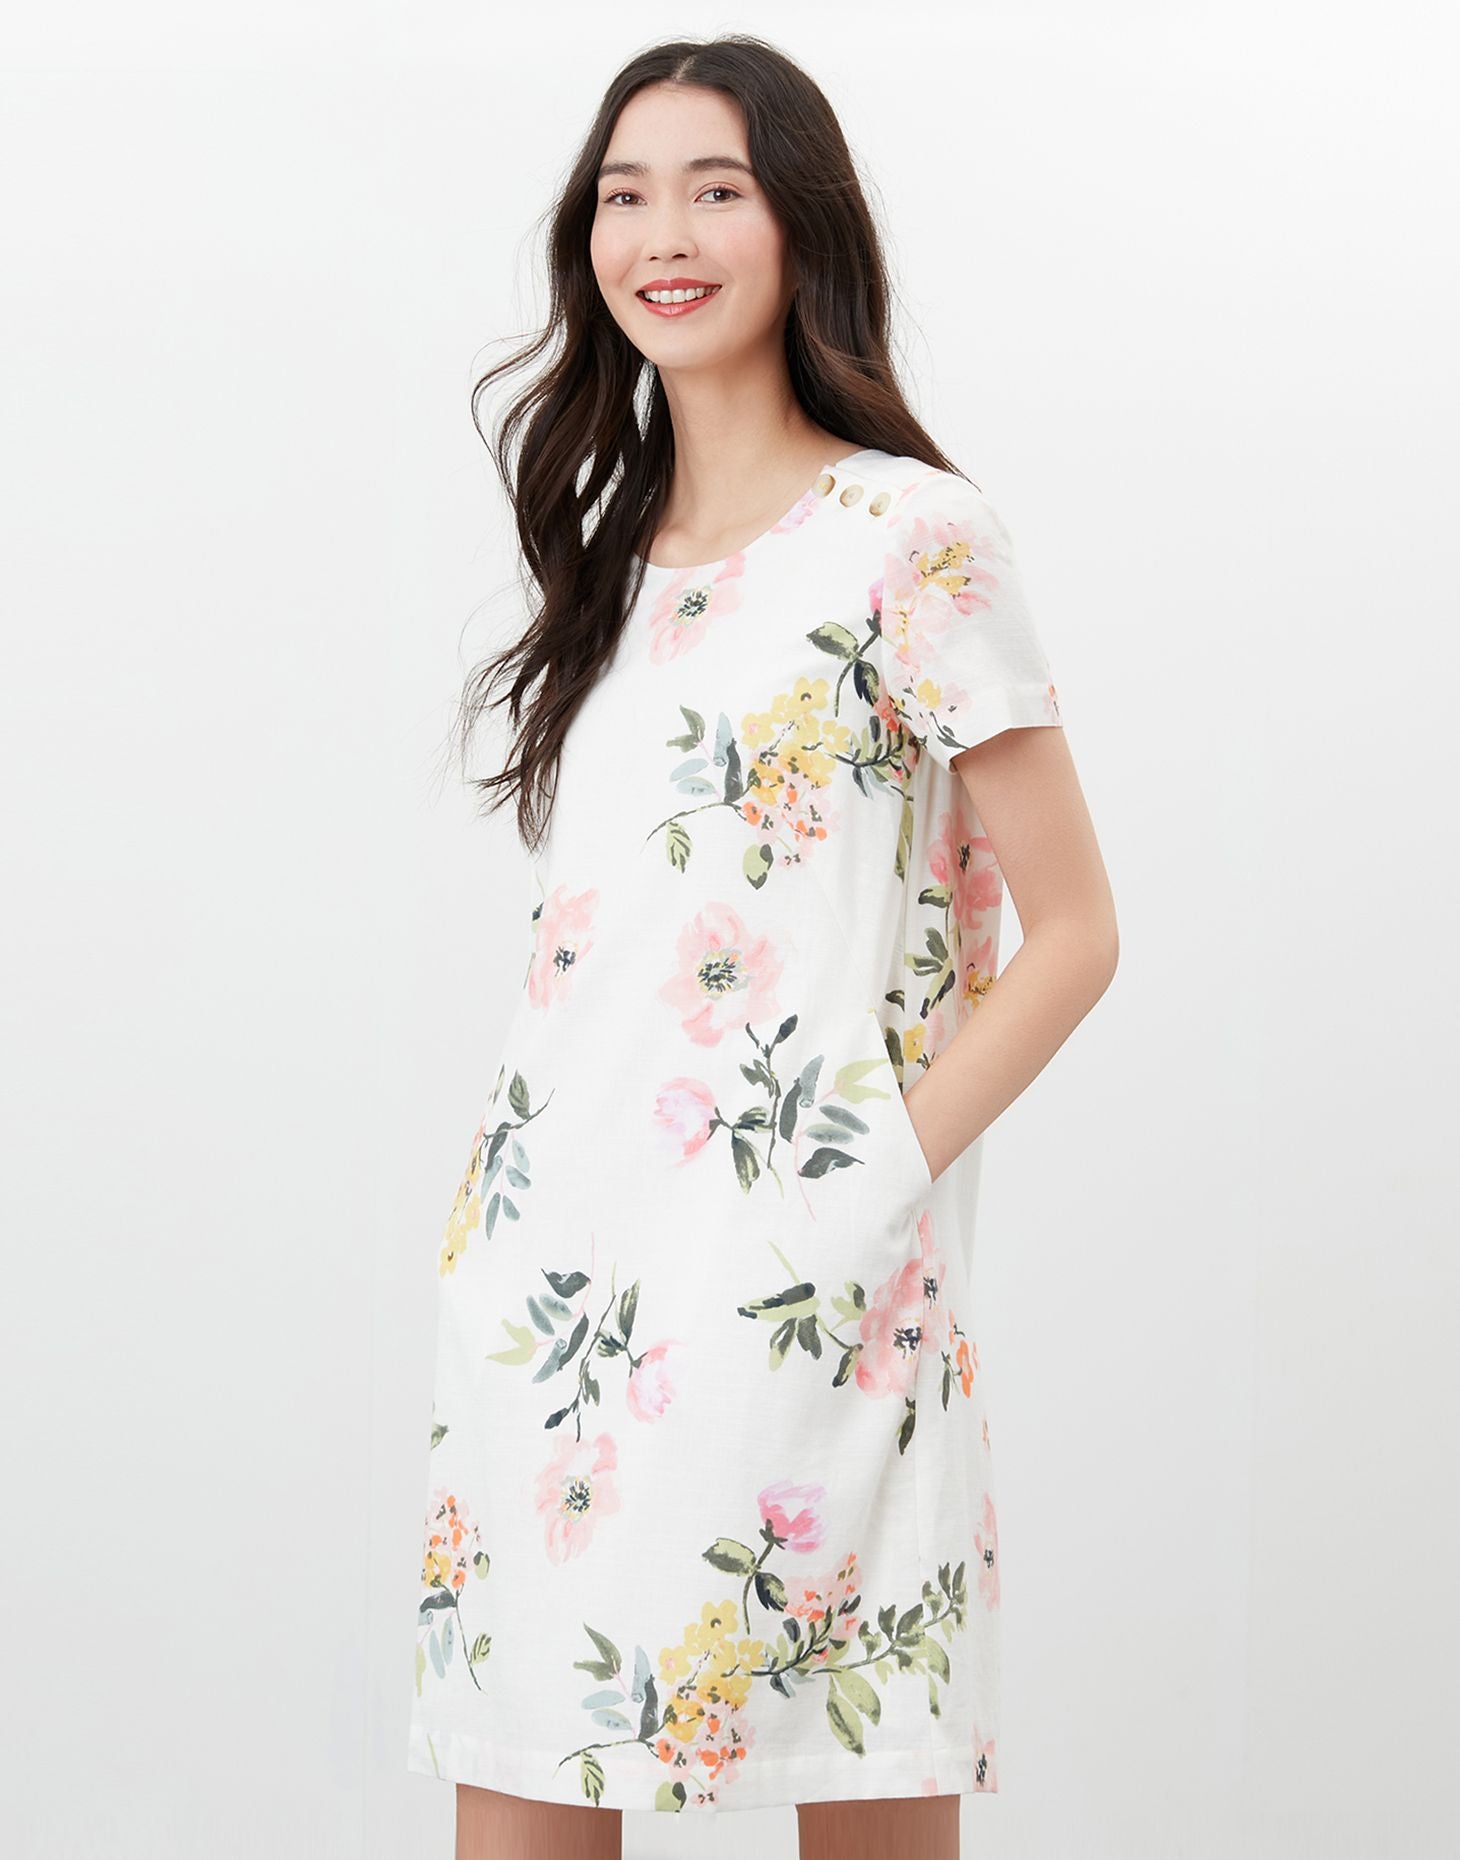 Rosetta Print Shift Dress in Cream floral